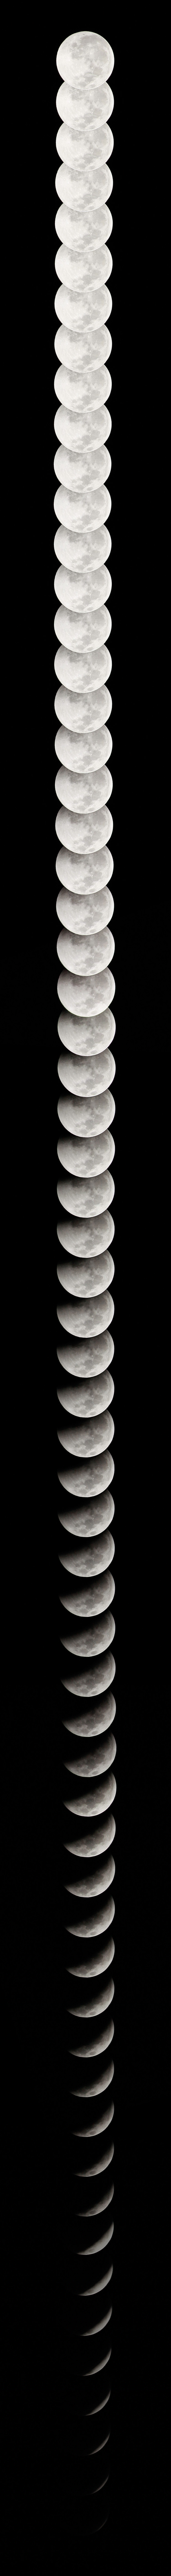 Eclipse lunaire du 21 Décembre 2010